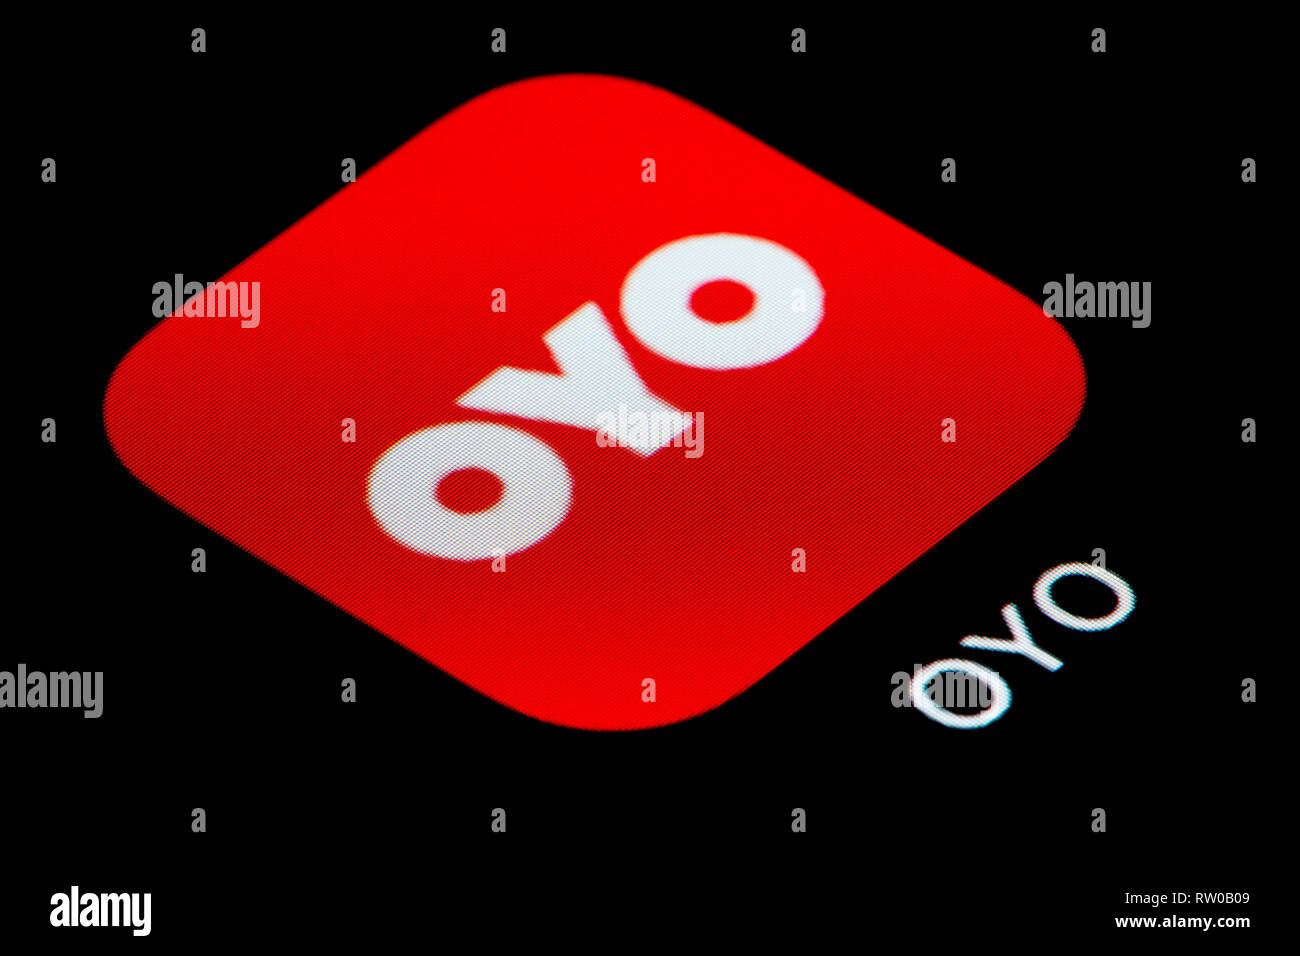 Eine Nahaufnahme der Oyo Zimmer App Symbol, wie auf dem Bildschirm eines Smartphones (nur redaktionelle Nutzung) Stockfoto